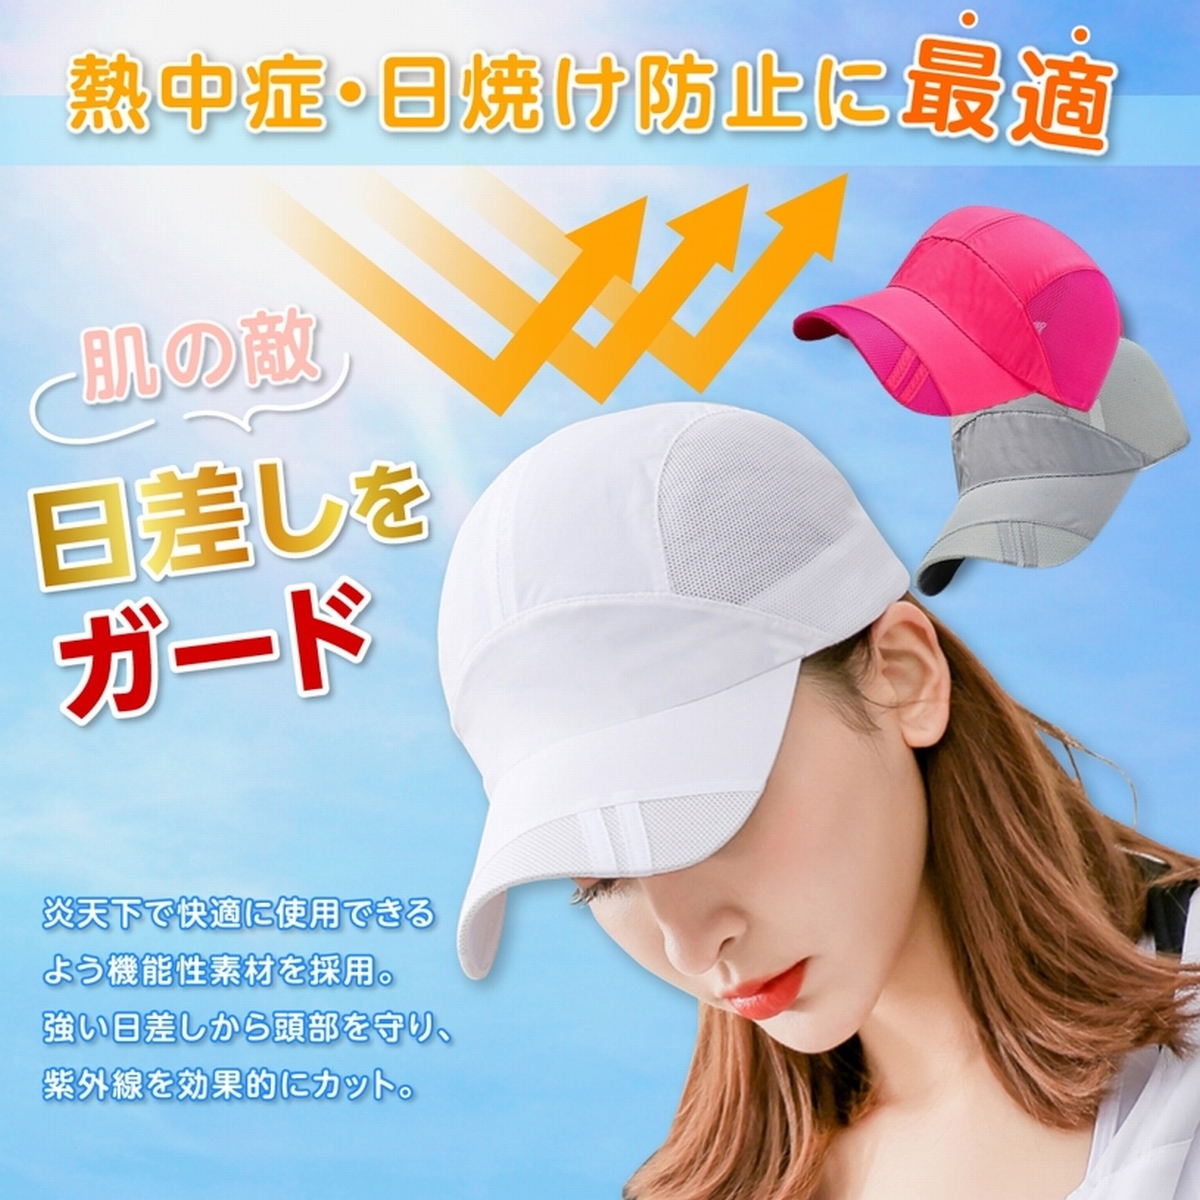  бег колпак колпак довольно большой одноцветный шляпа мужской женский сетка спорт колпак размер регулировка UV cut 